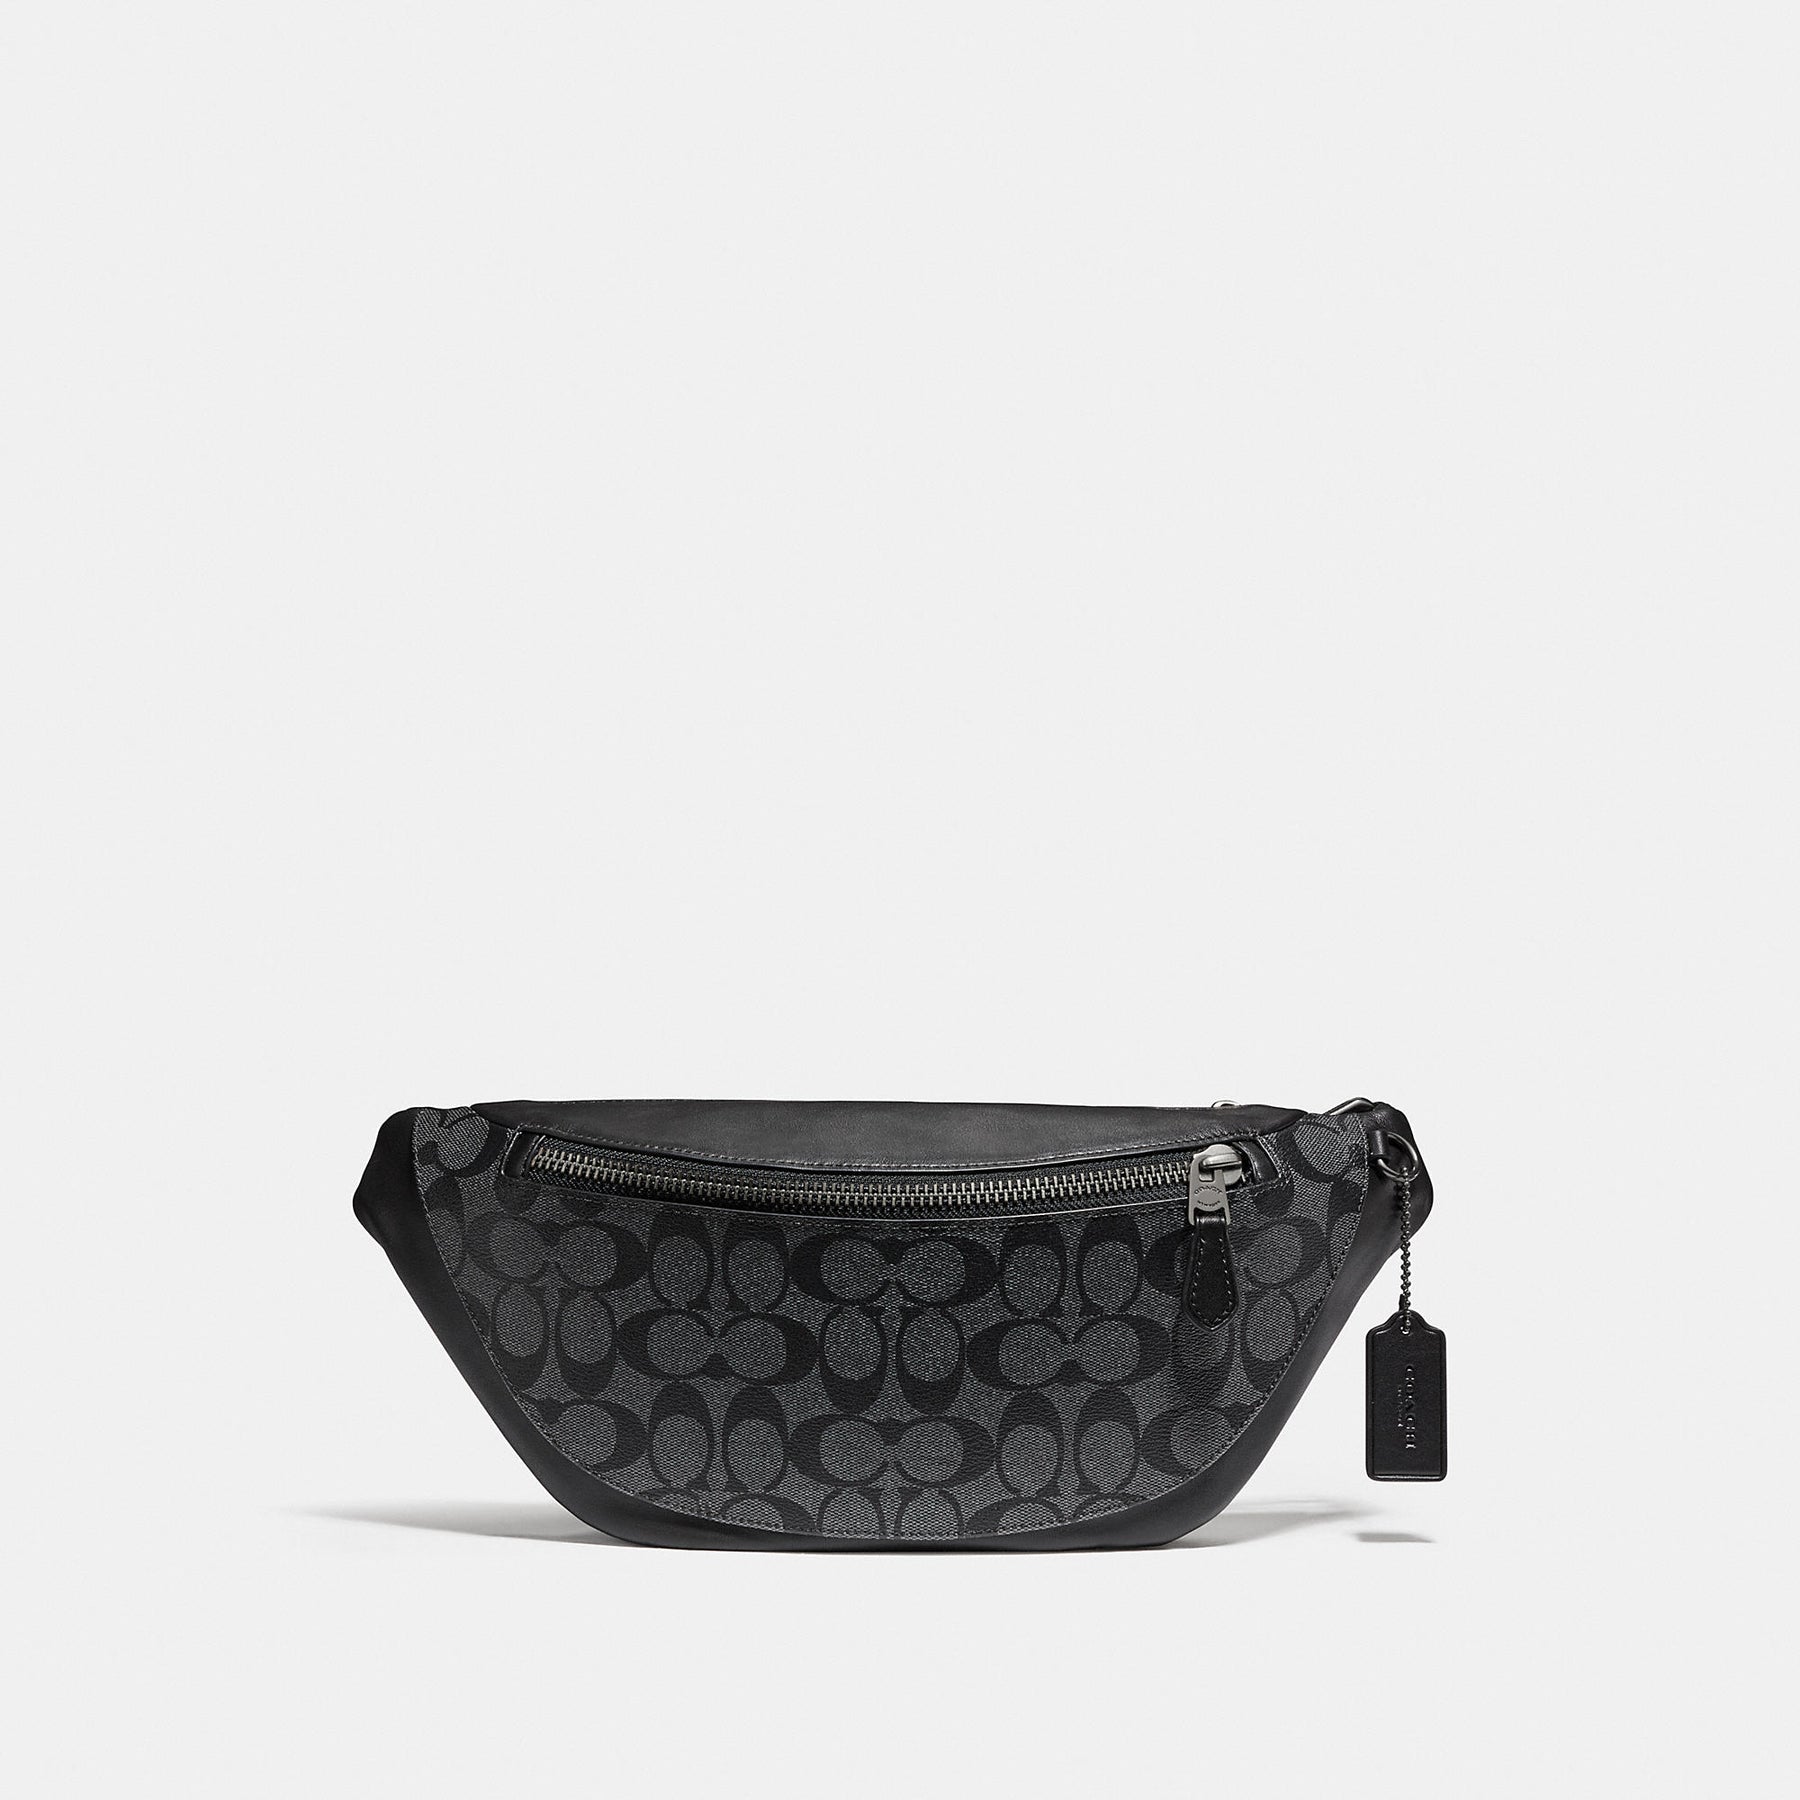 COACH®  Wyatt Belt Bag With Plaid Print